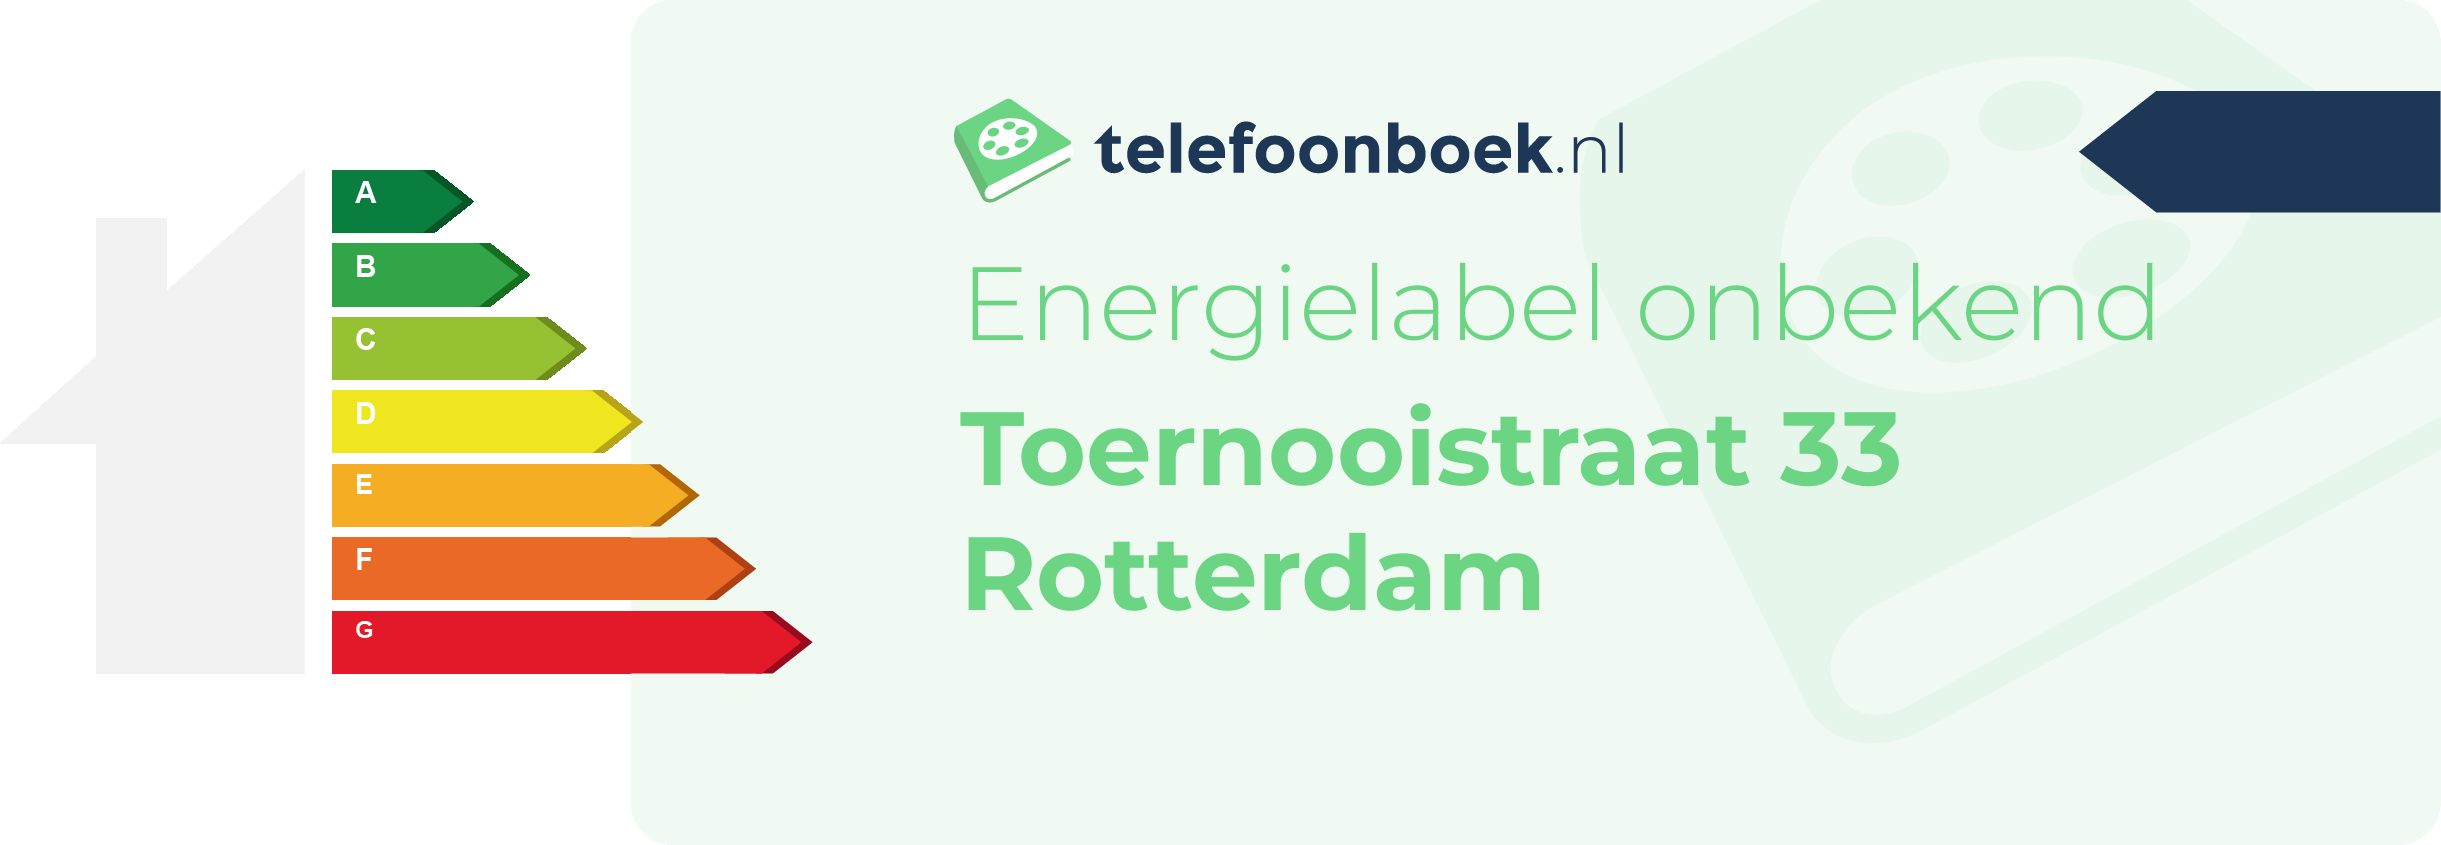 Energielabel Toernooistraat 33 Rotterdam